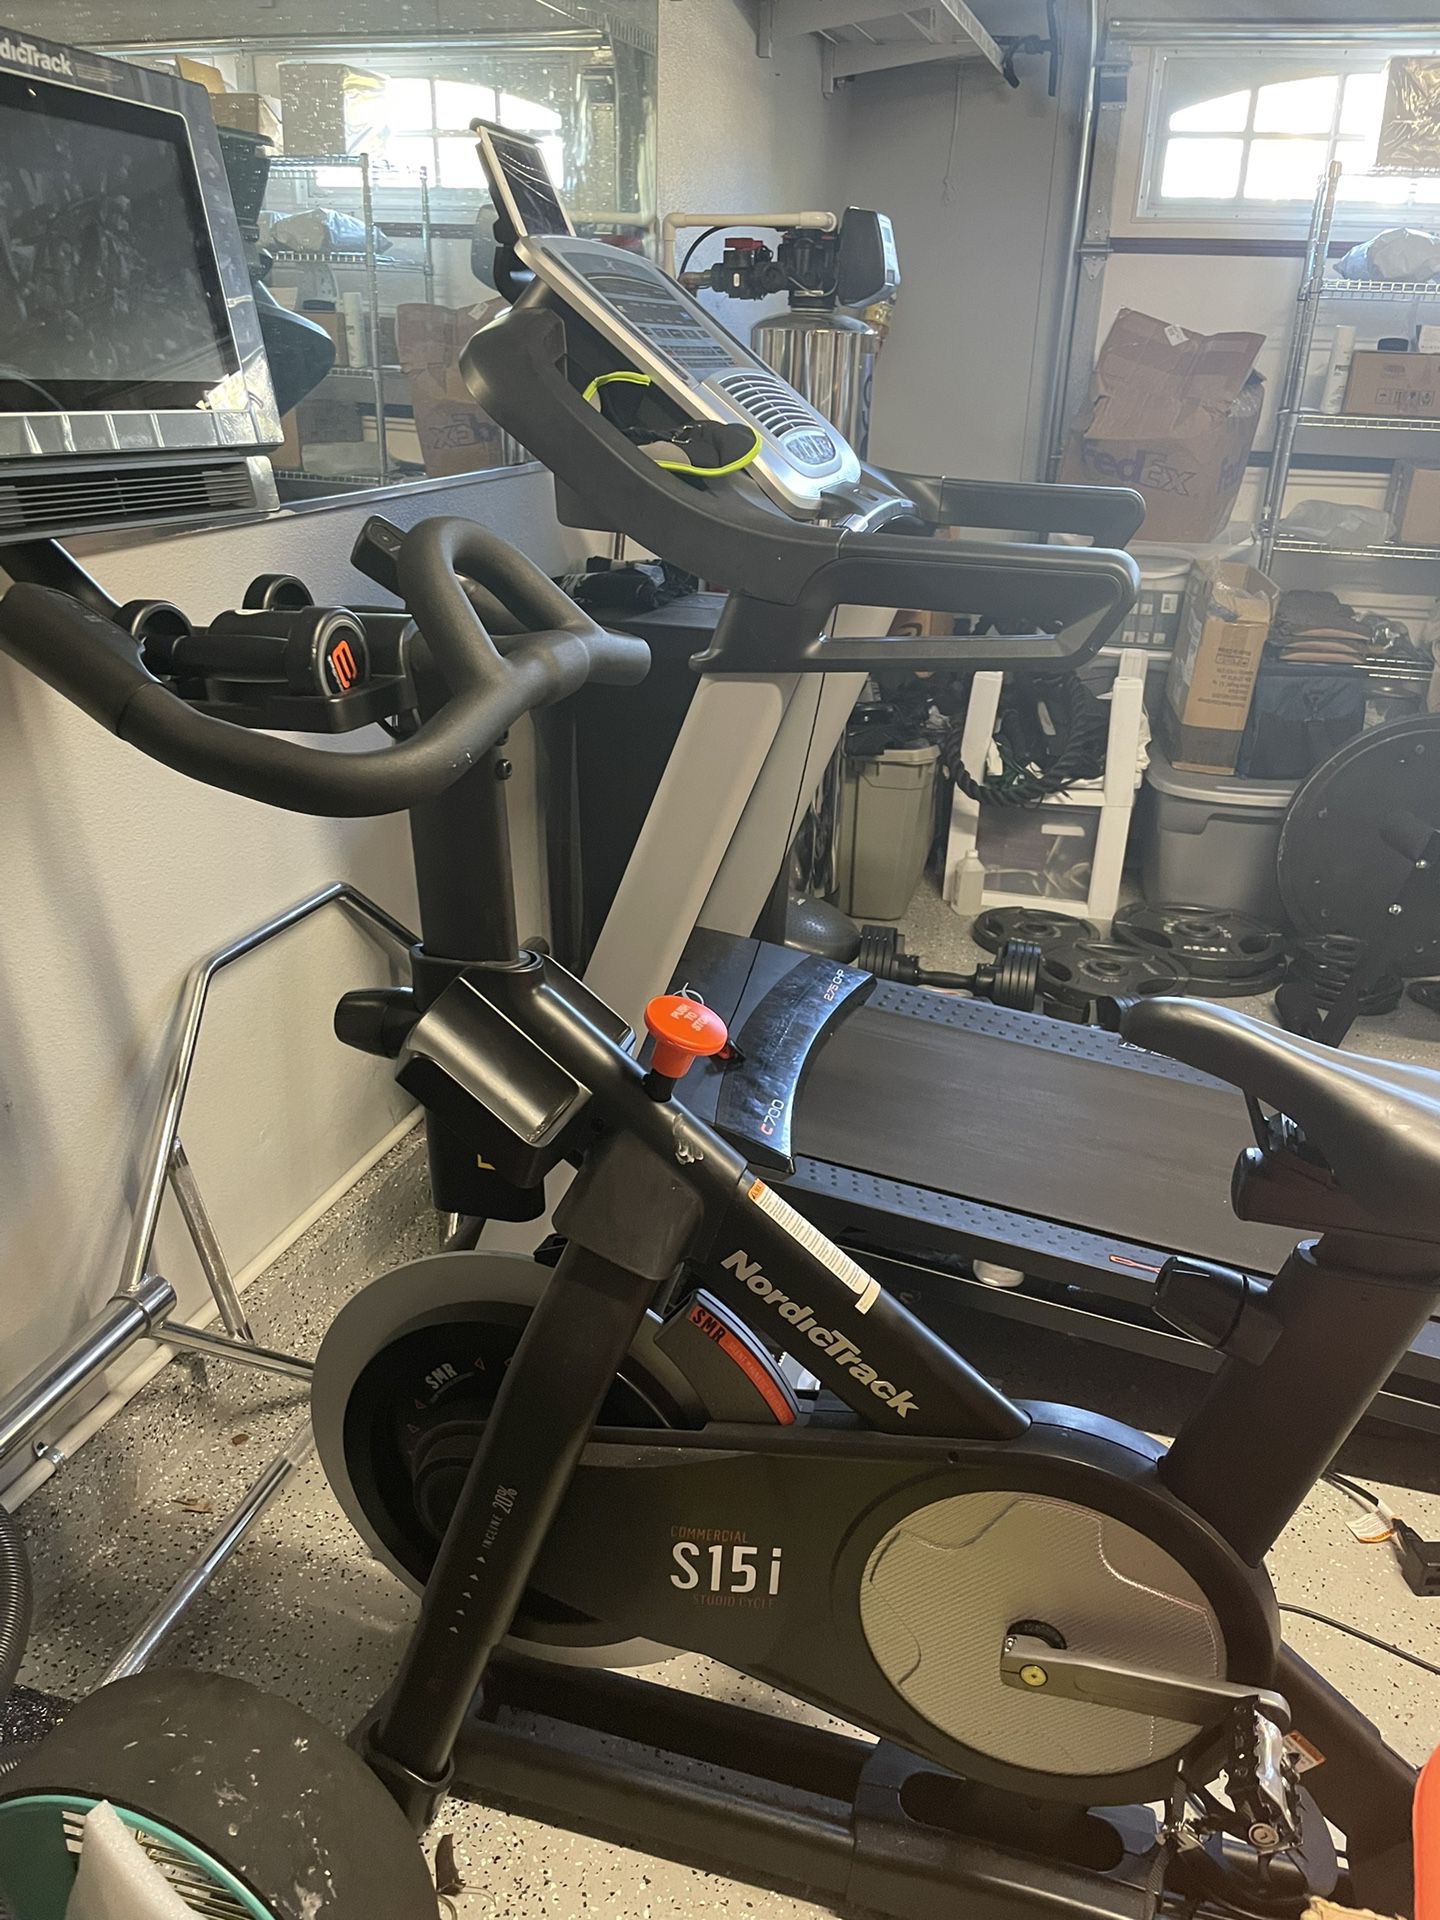 NordicTrack S15i Bike/ Nordic track C700 Treadmill